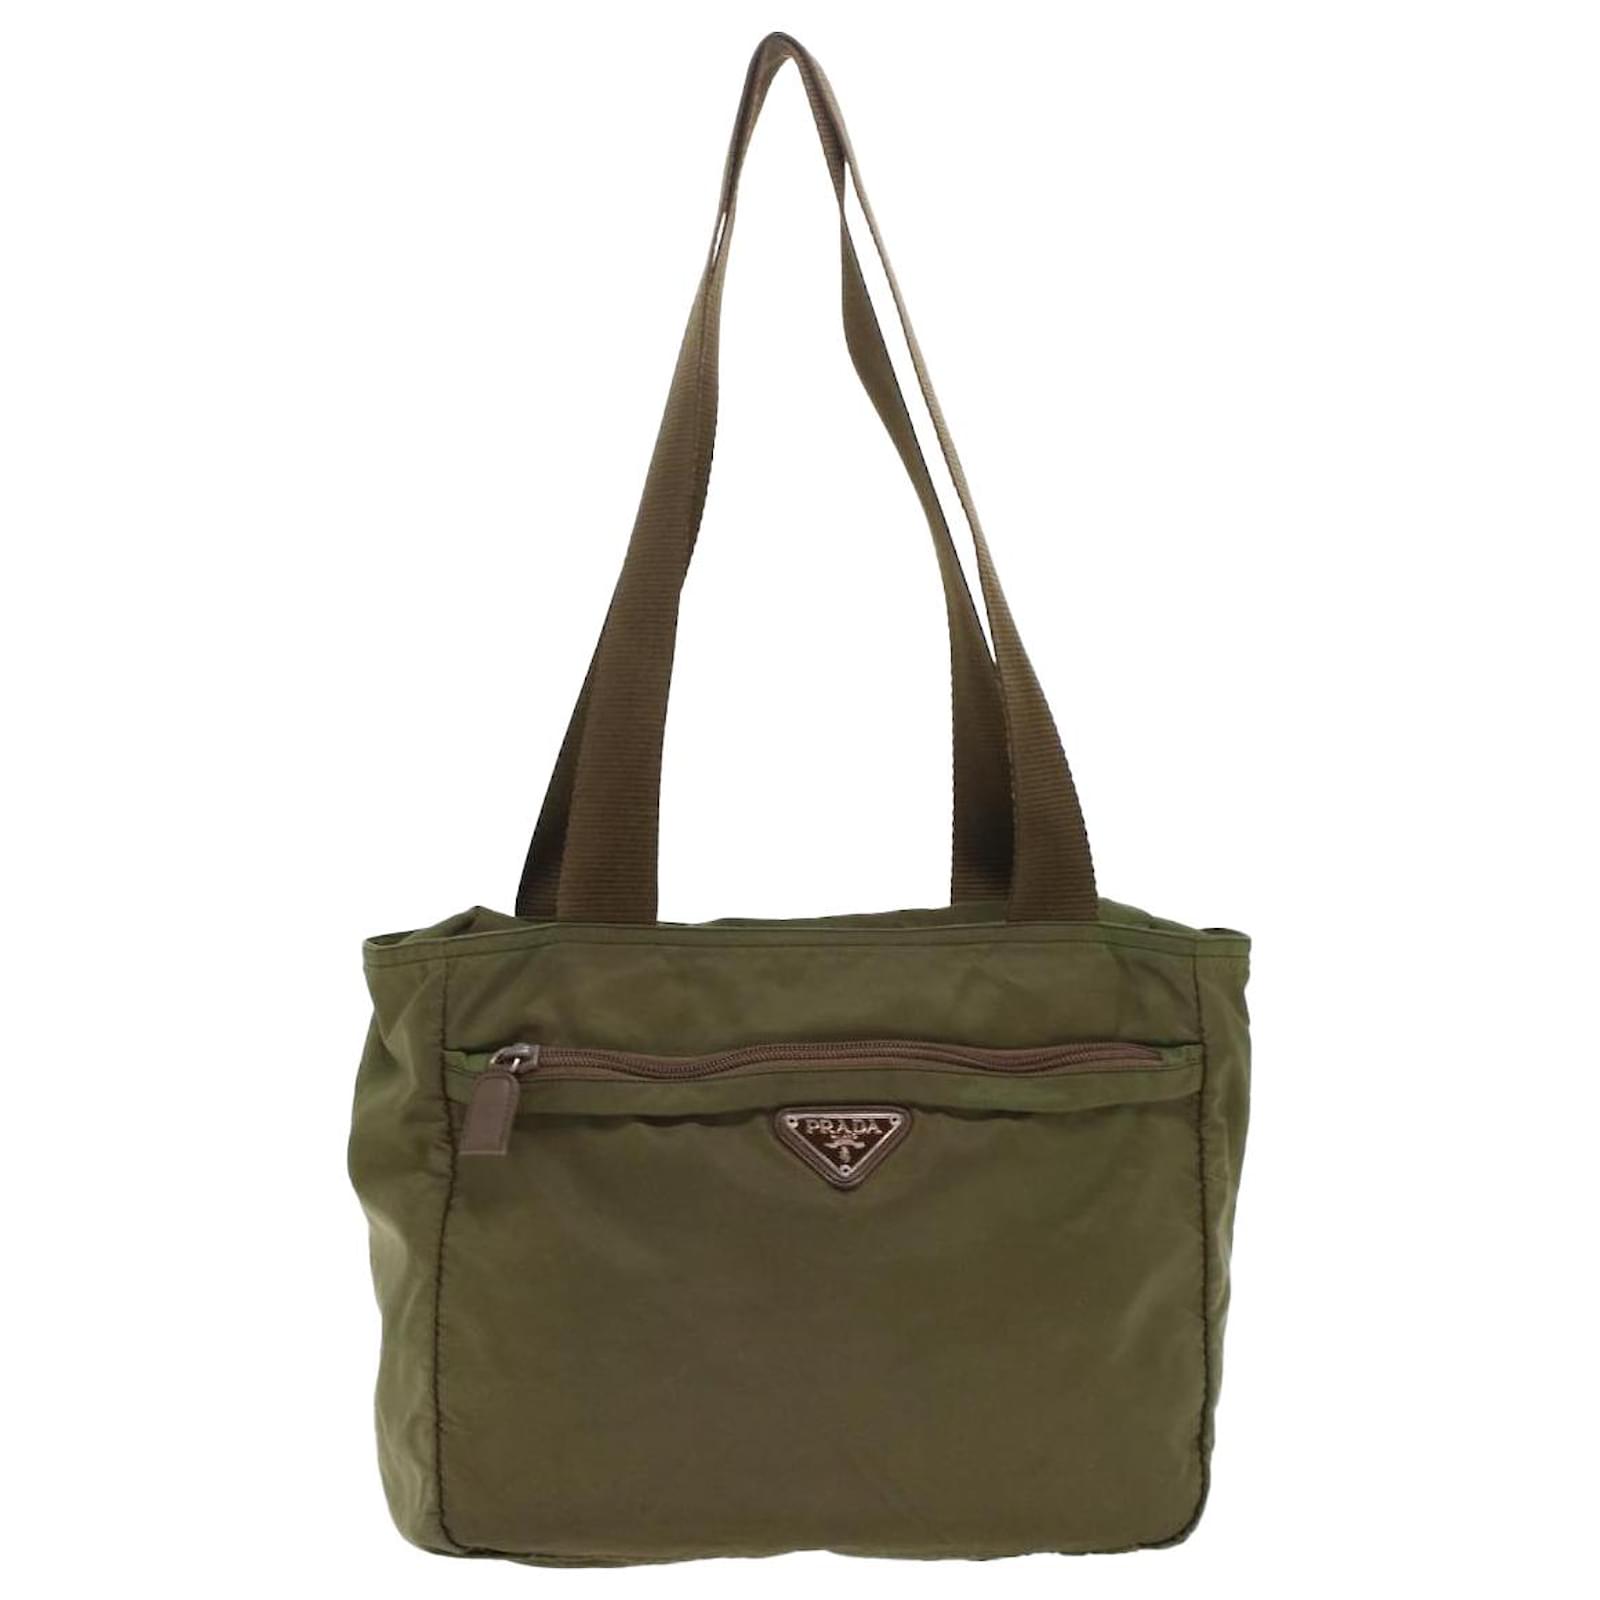 Prada Re-nylon Shoulder Bag - One-color